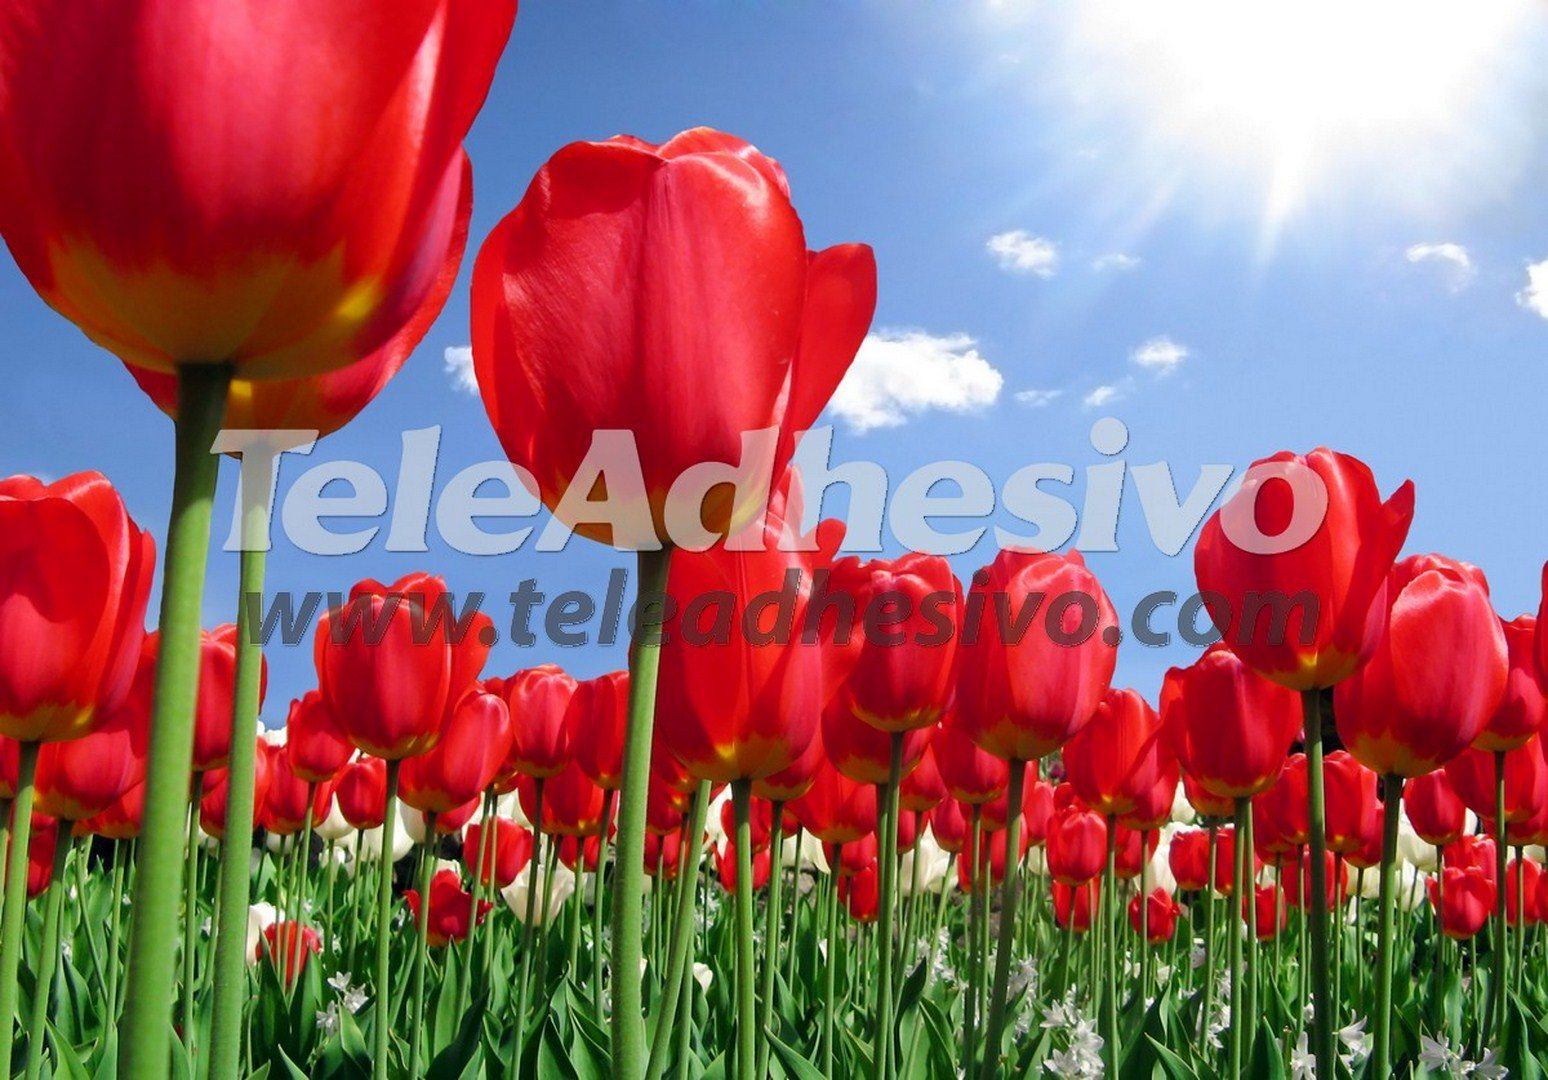 Fototapeten: Feld der Tulpen